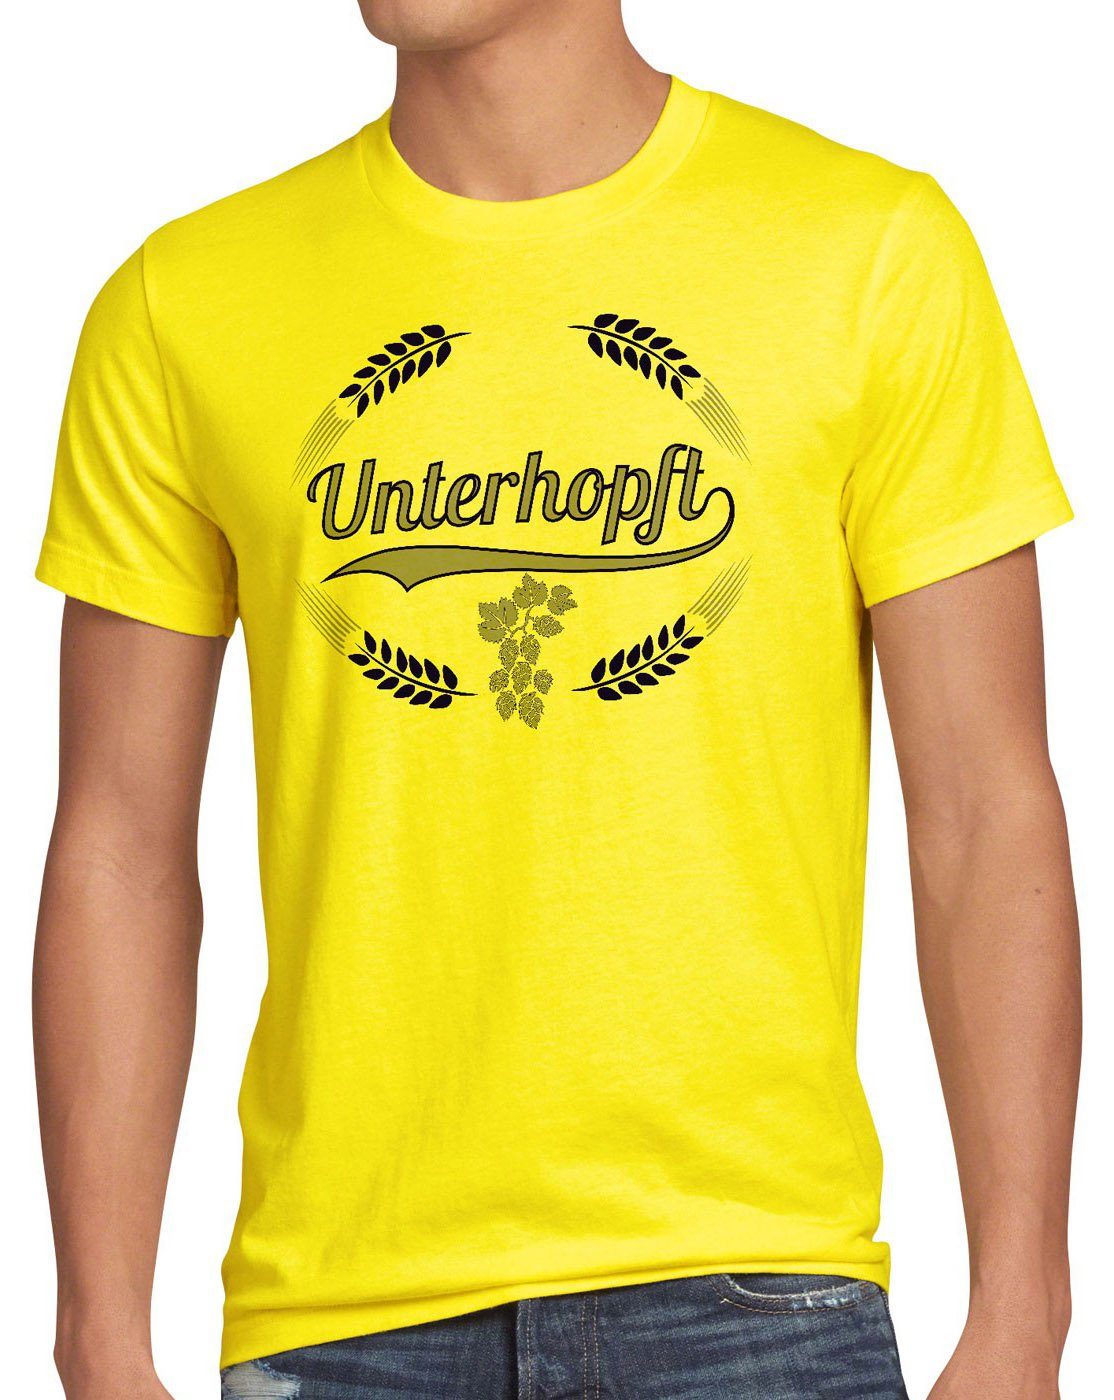 style3 Print-Shirt Bier Hopfen Shirt Fun Kult Funshirt Herren Fest gelb Malz Spruch Unterhopft T-Shirt